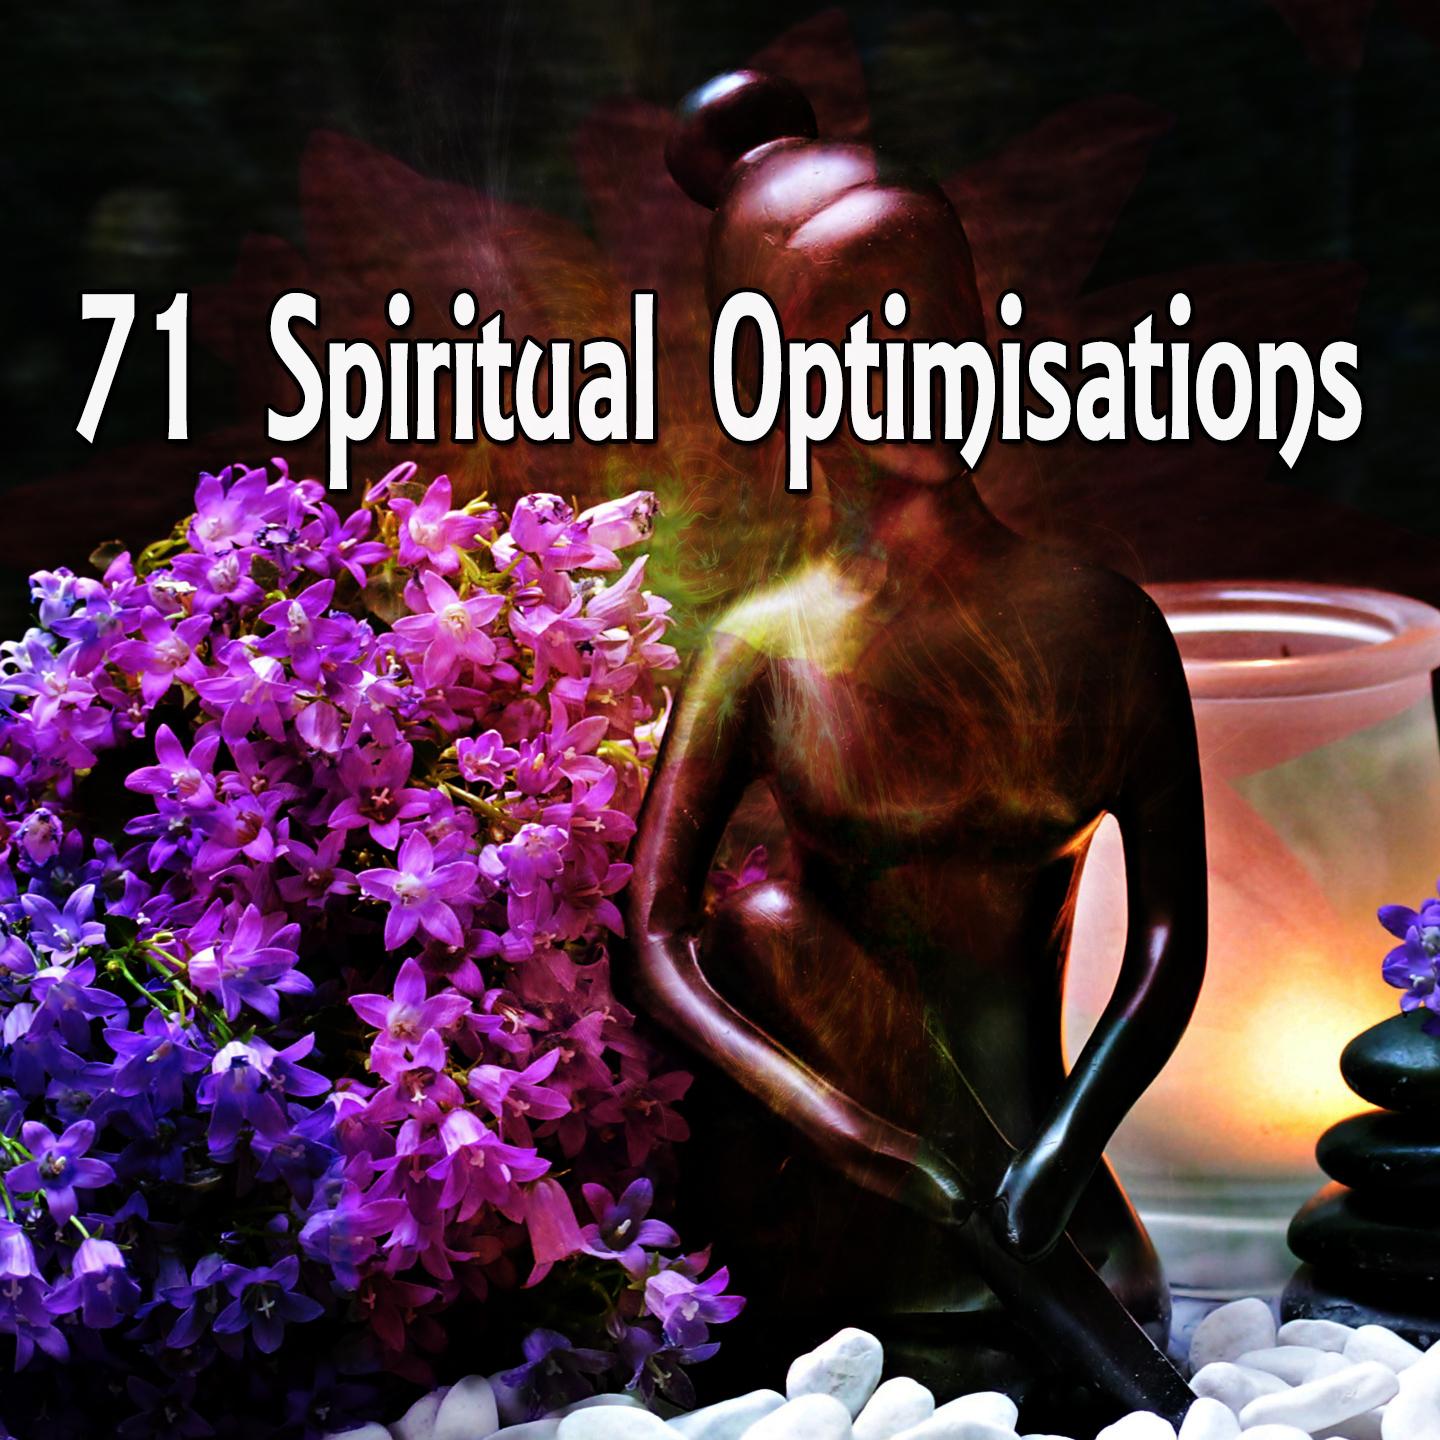 71 Spiritual Optimisations